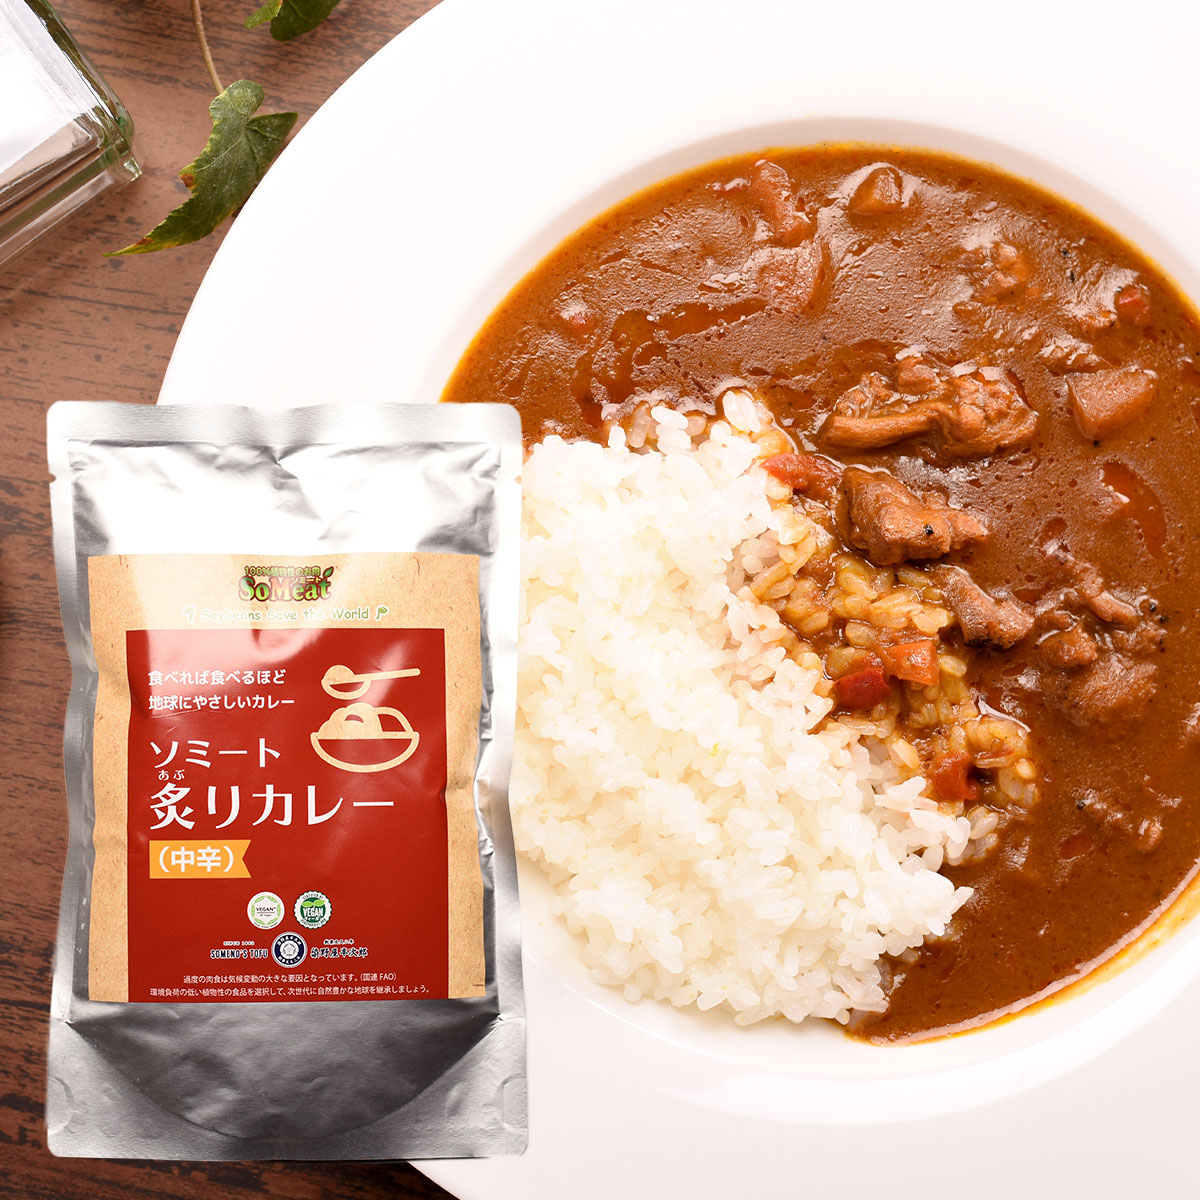 aburiyaki curry - recipes